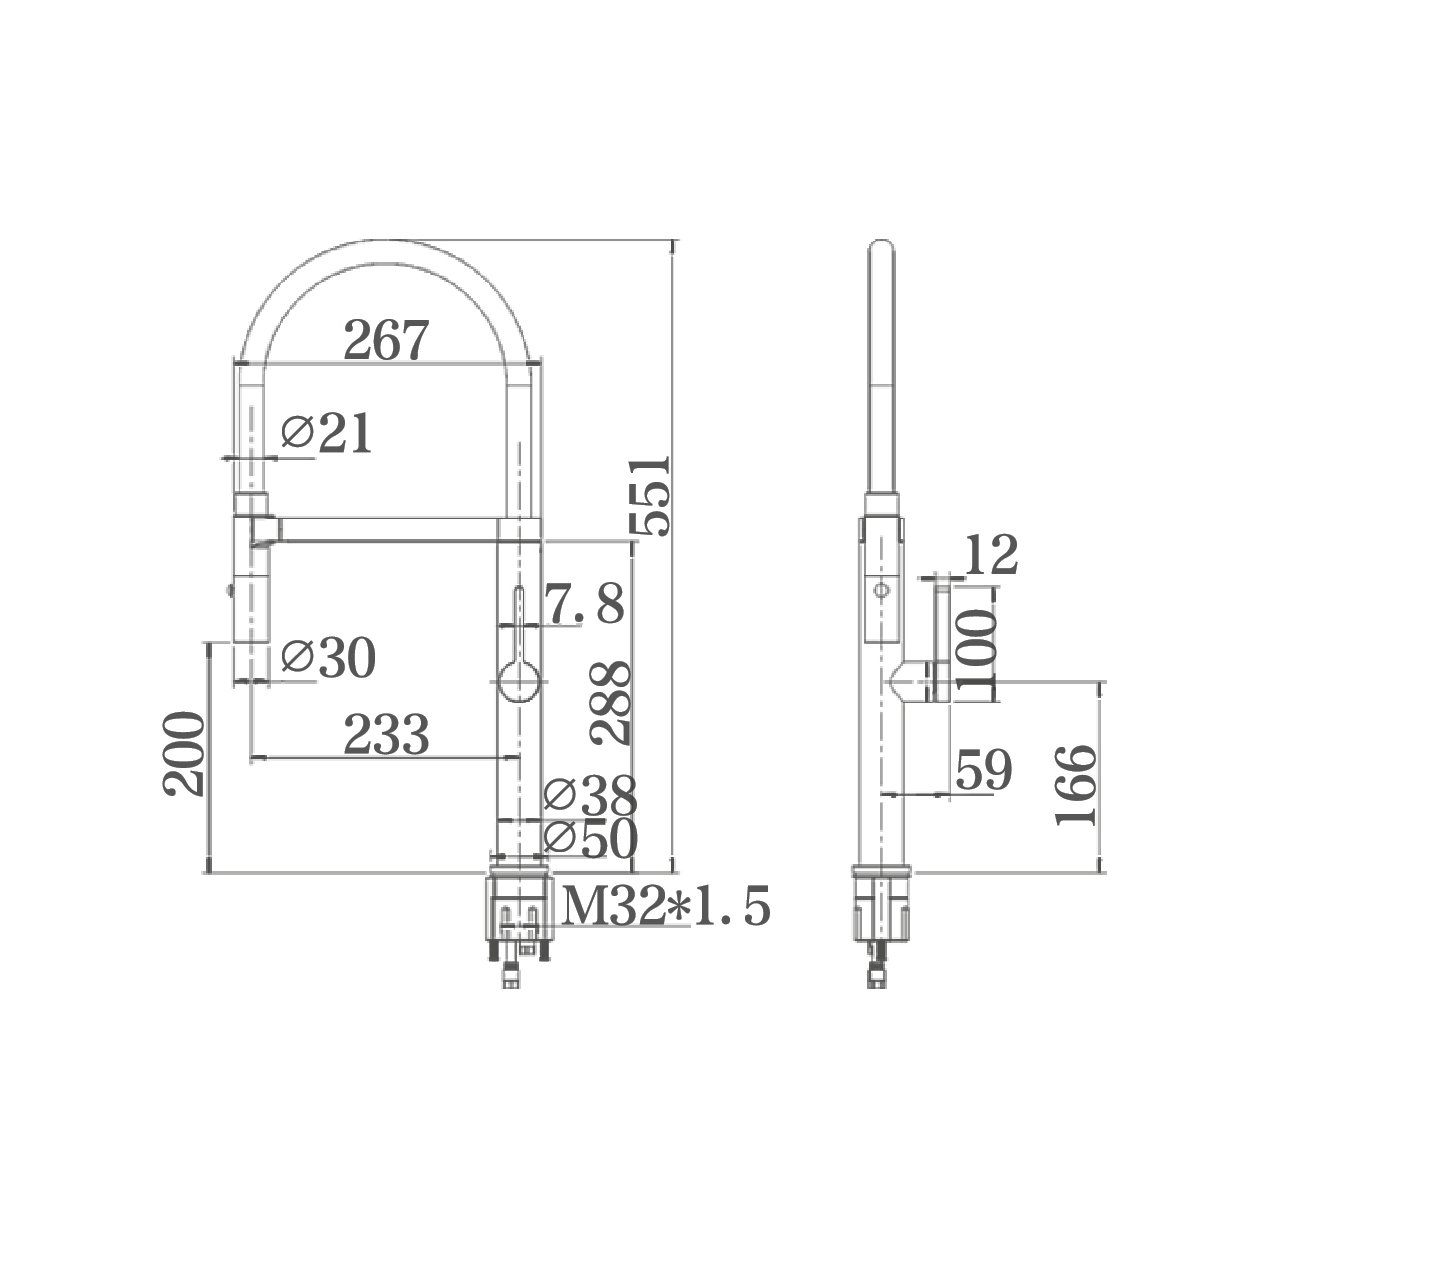 MILAN Sink mixer in Gun Metal w/Black Hose - WT6205GM Tapware ECT 